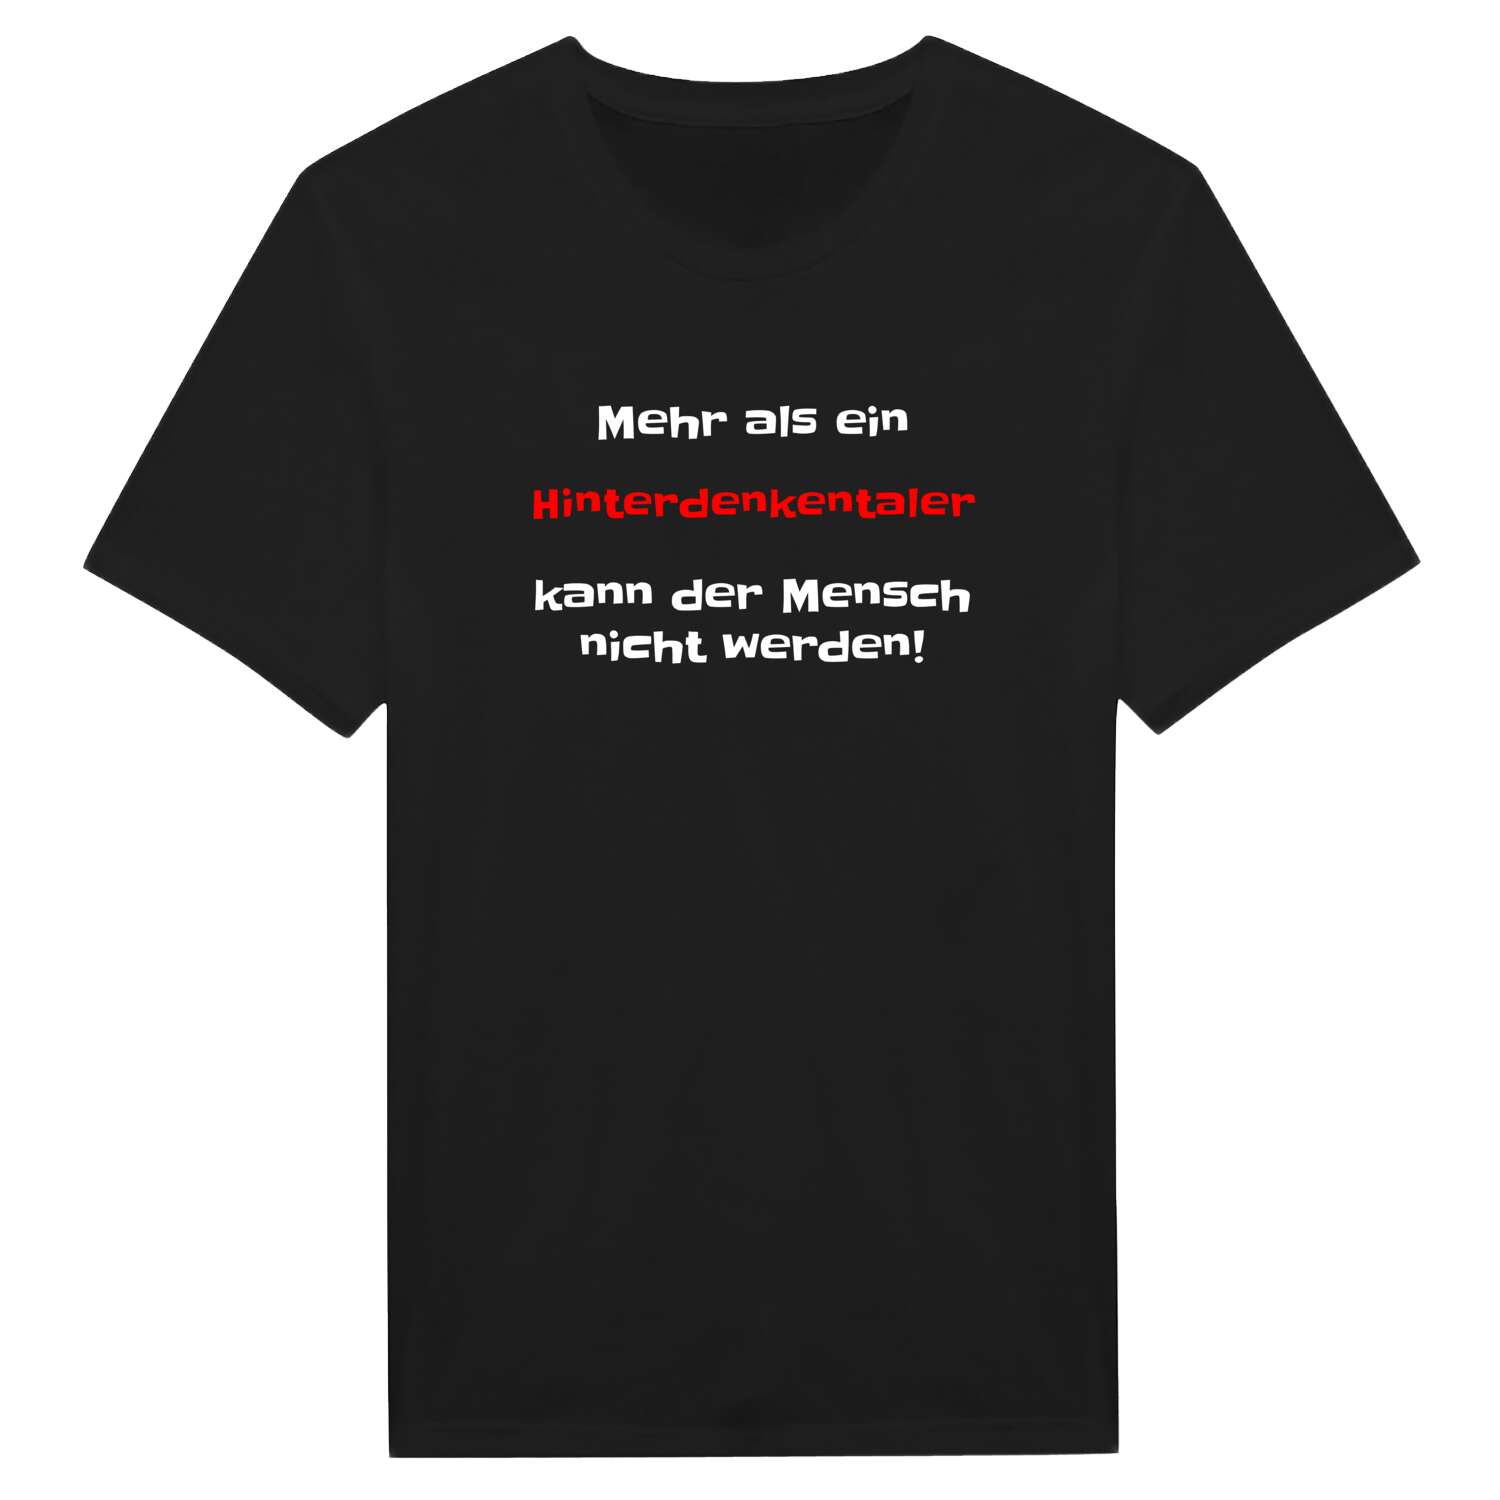 Hinterdenkental T-Shirt »Mehr als ein«